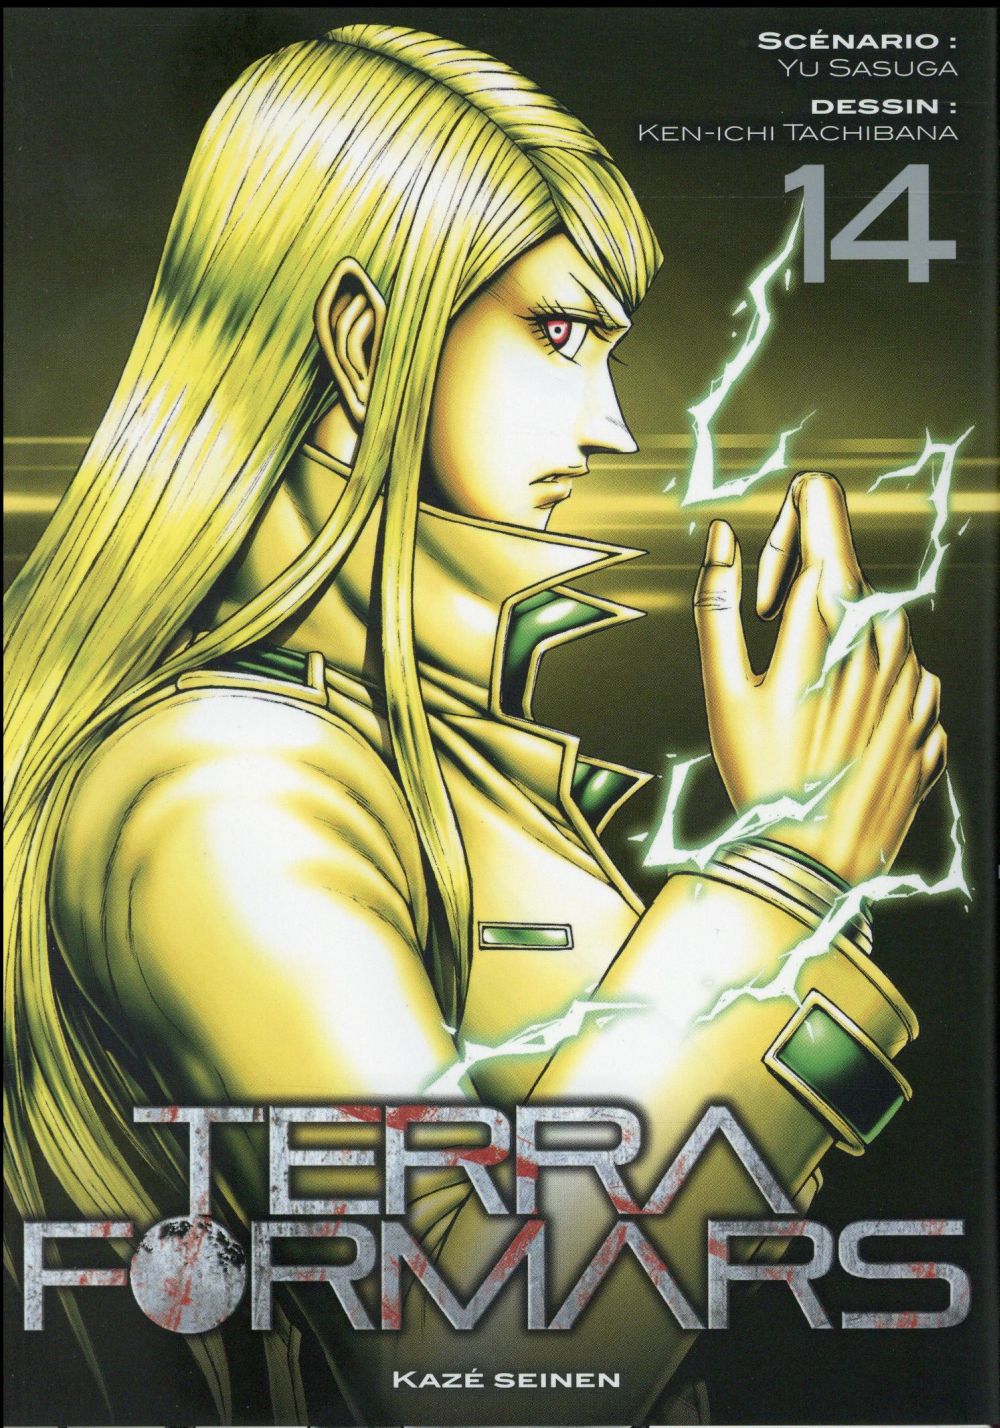 TERRA FORMARS T14